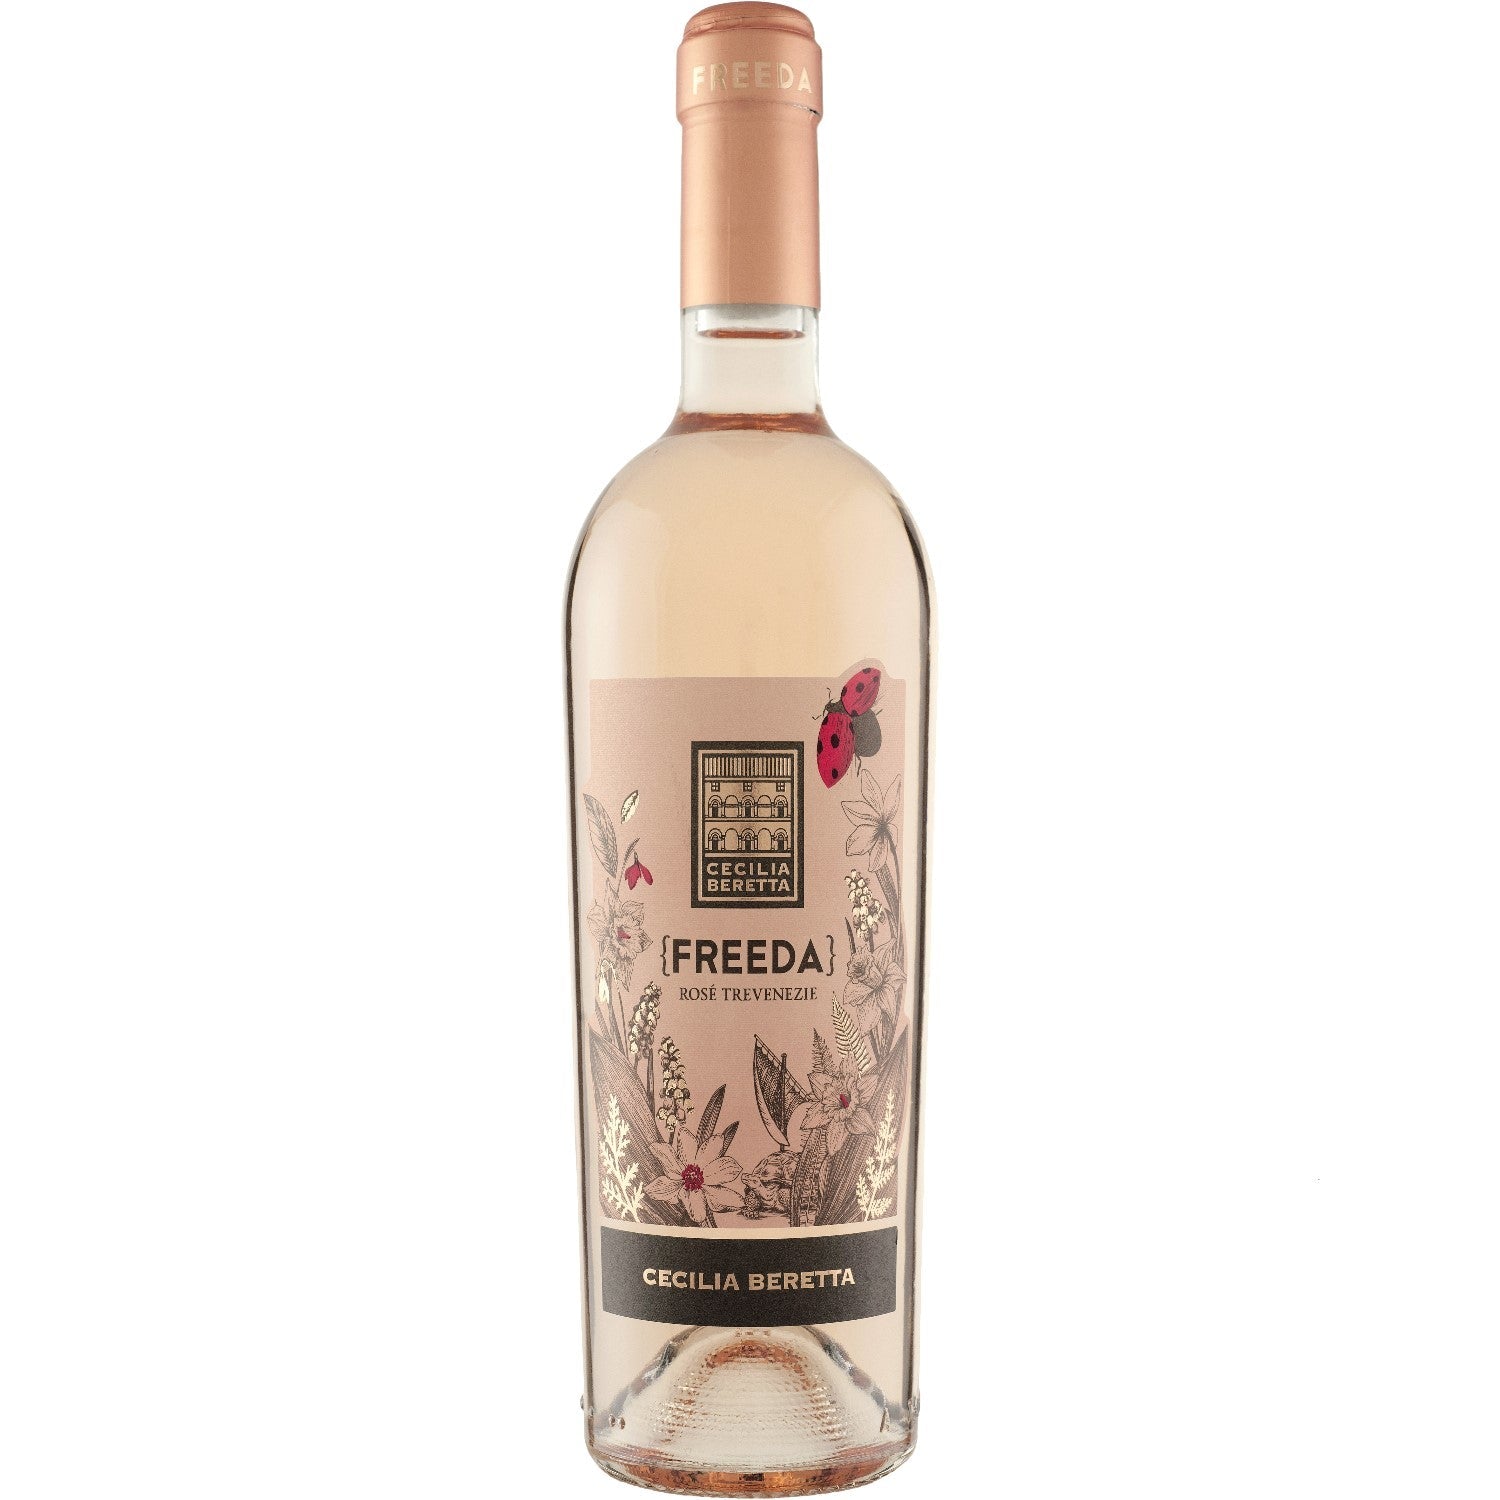 Cecilia Beretta Freeda Rosé Trevenezie IGT Roséwein Wein trocken Italien (6 x 0.75l) - Versanel -